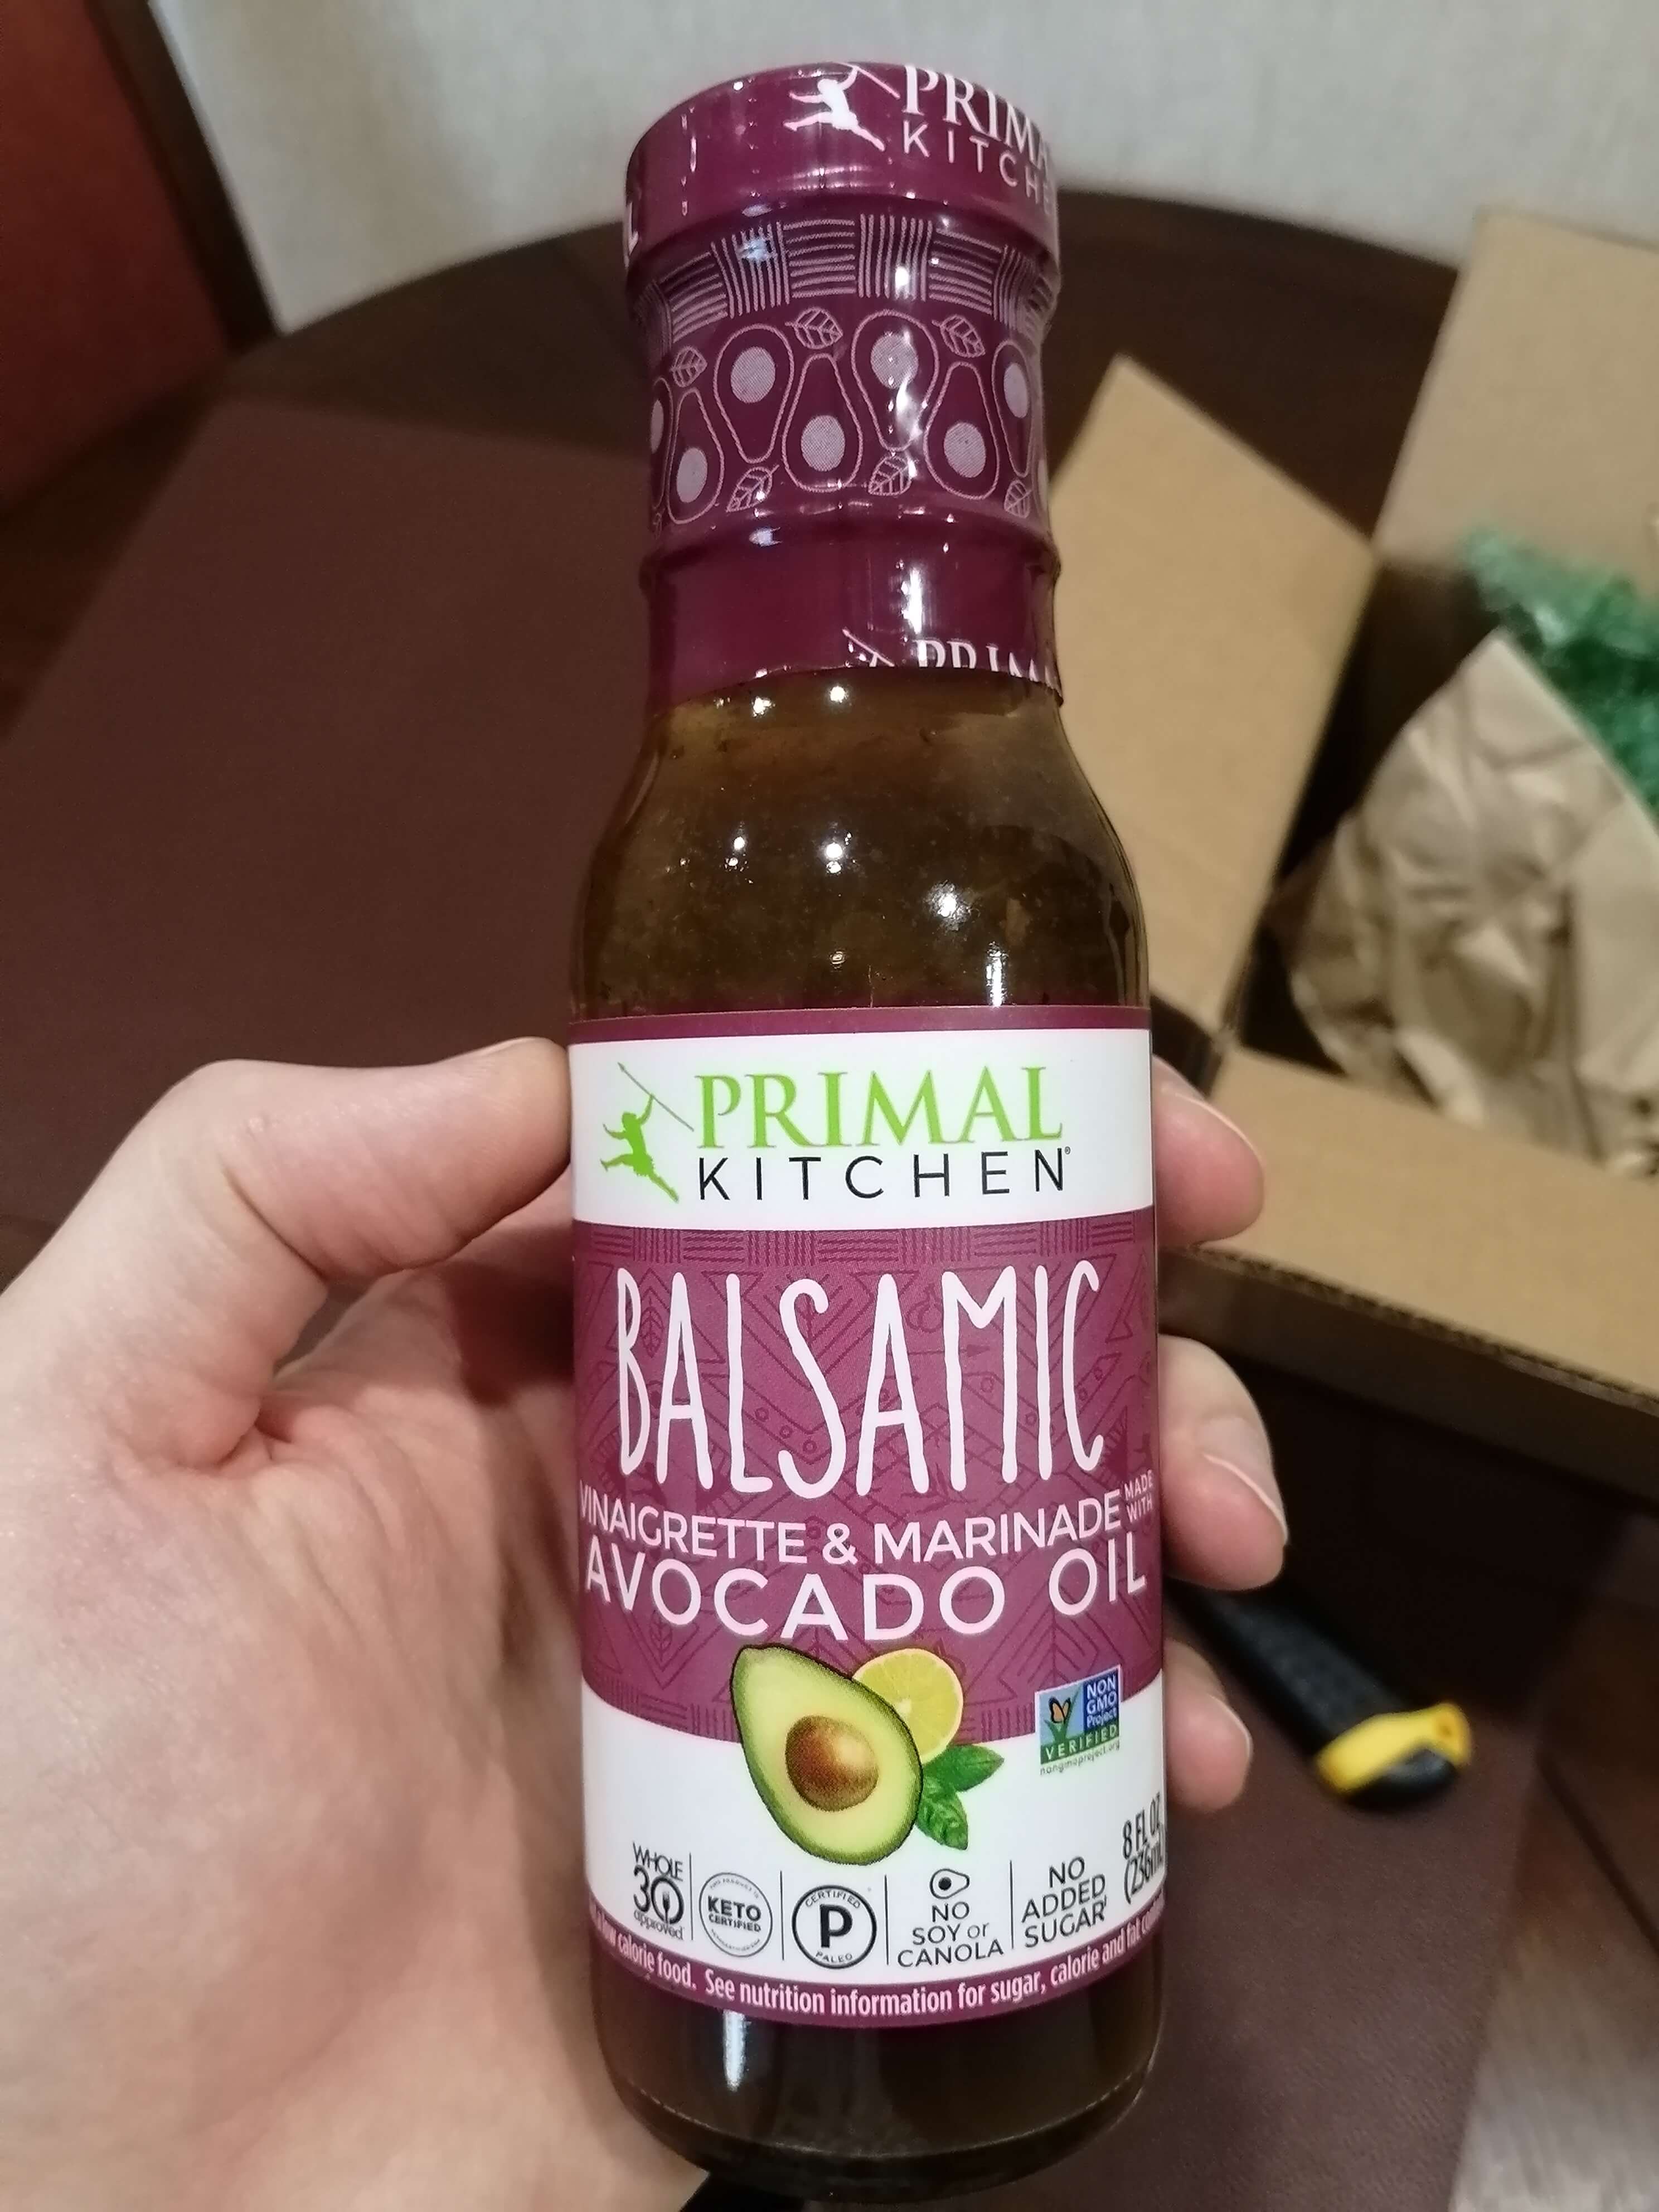 Бальзамический соус с маслом авокадо Primal kitchen